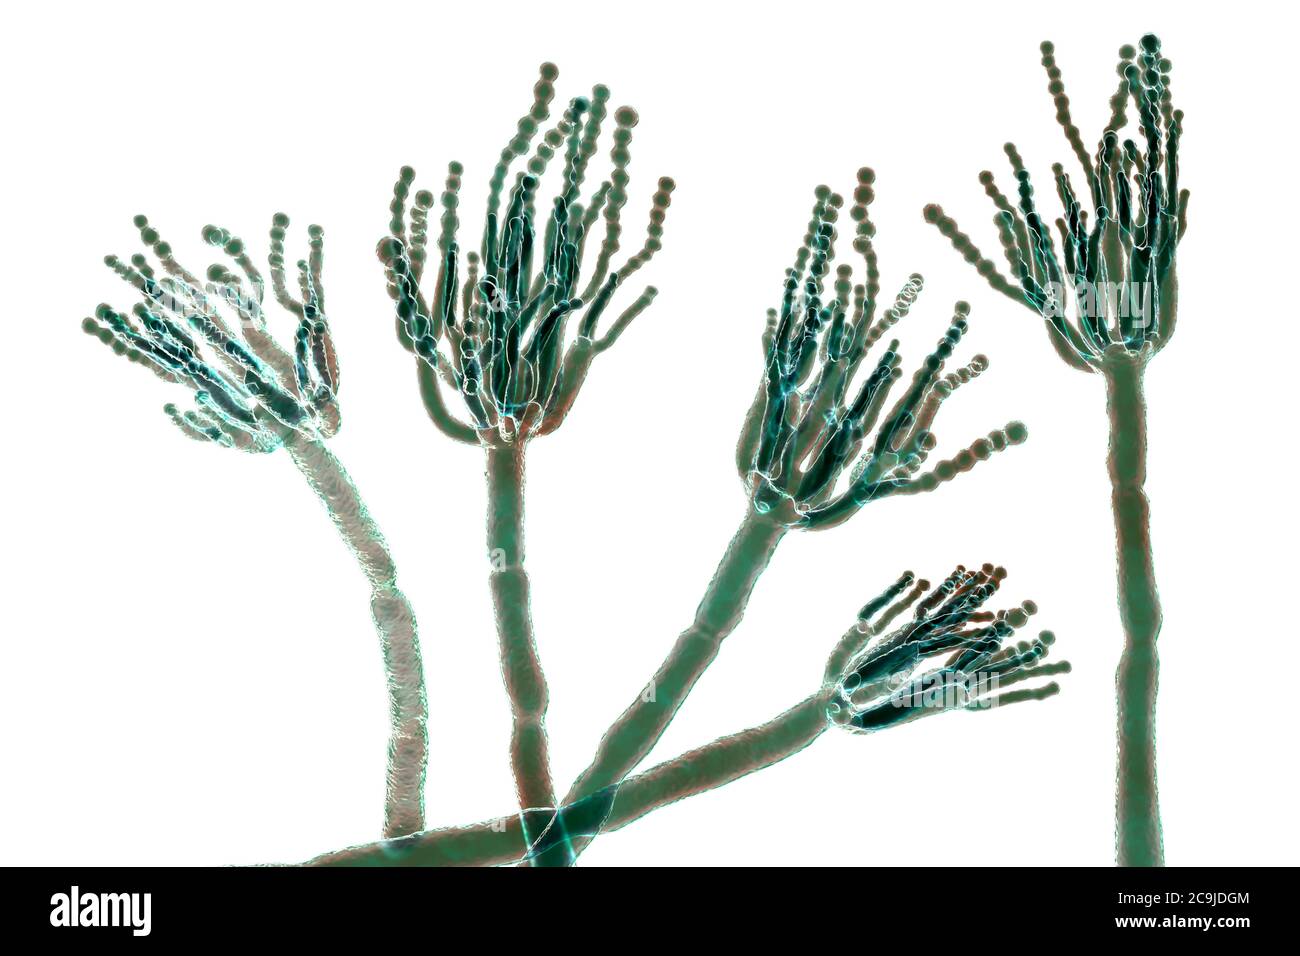 Penicillium fungus. Computer illustration of a Penicillium sp. fungus. Specialised threads, called conidiophores, are seen. Bunches of spores, called Stock Photo